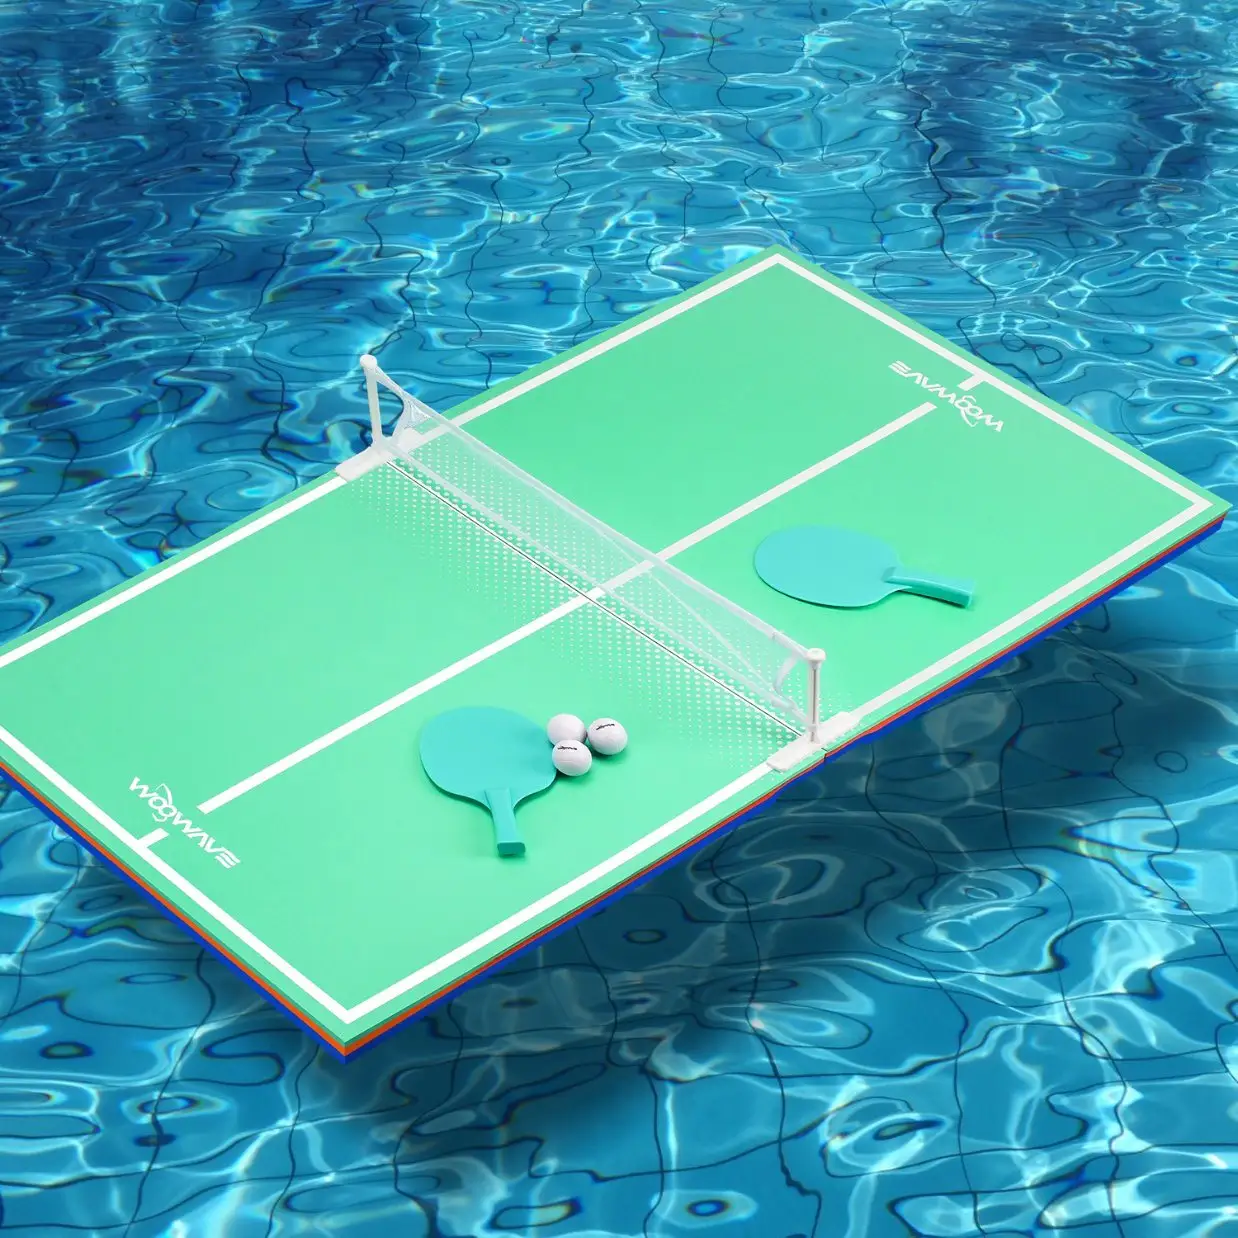 WOOWAVE EVA köpük yüzen masa tenisi katlanır oyun masası yüzer pin pon masası yüzme havuzu su oyunları için Set